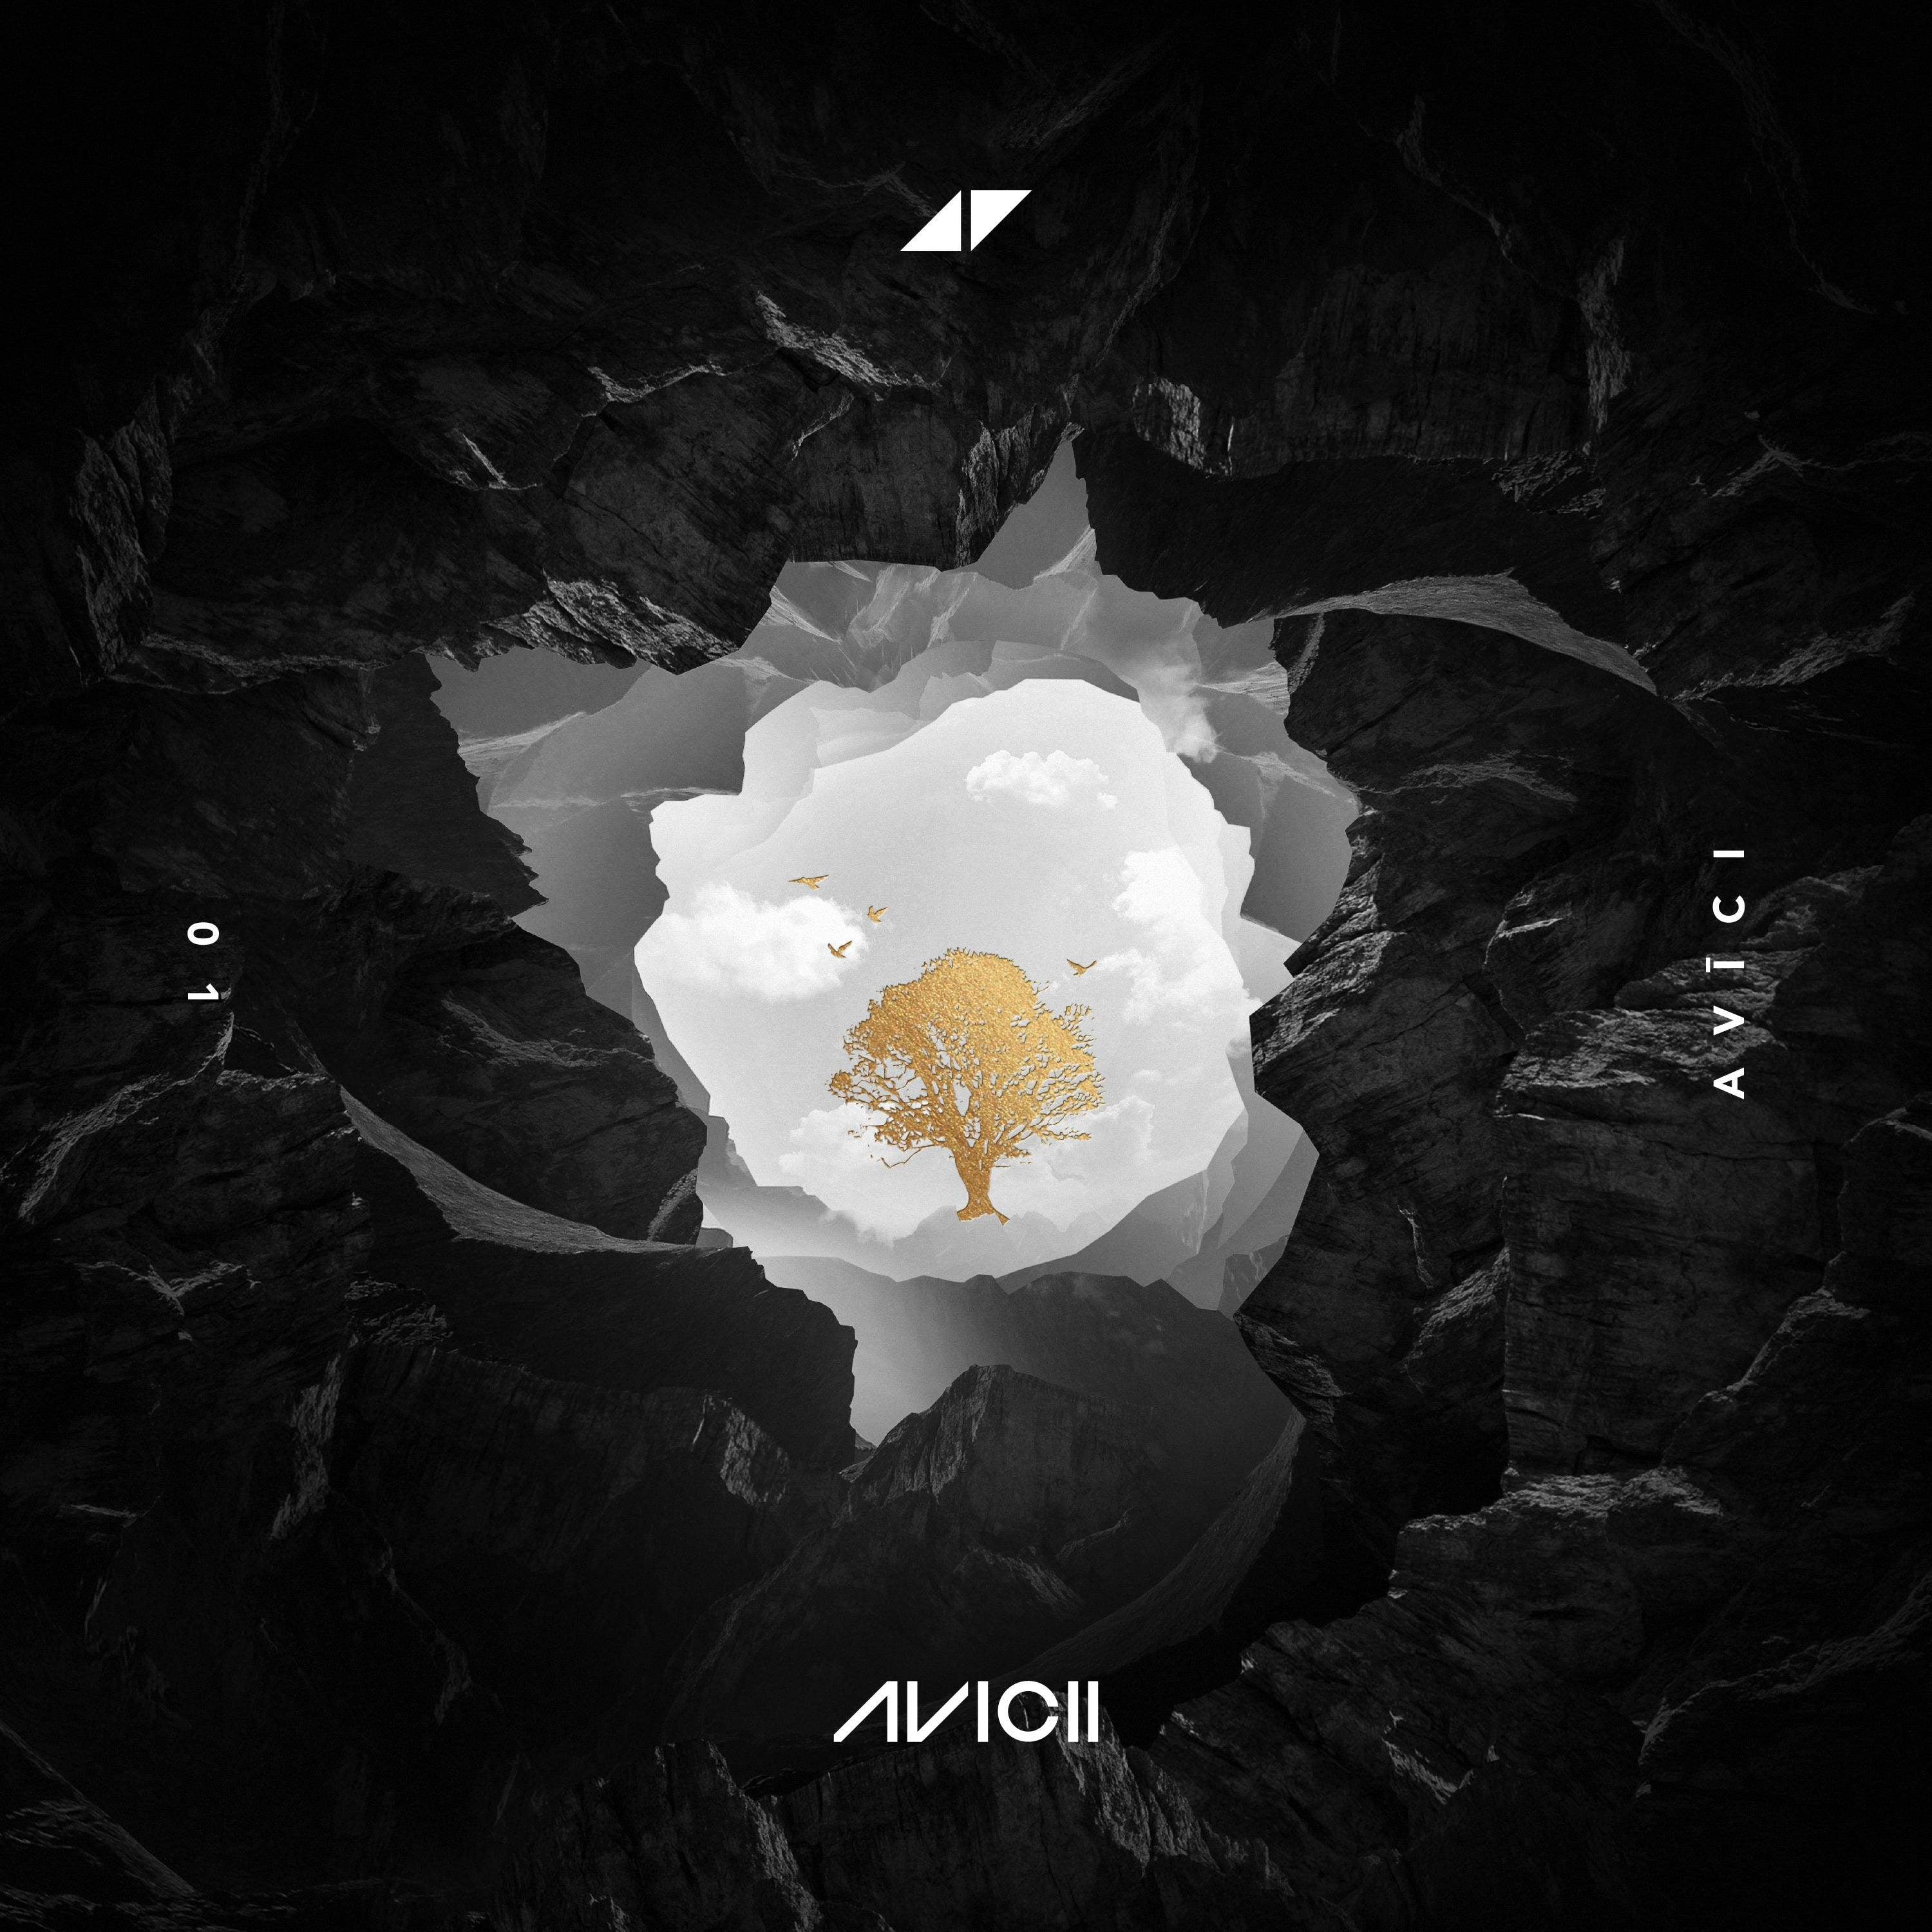 Avicii, musician, DJ, simple background